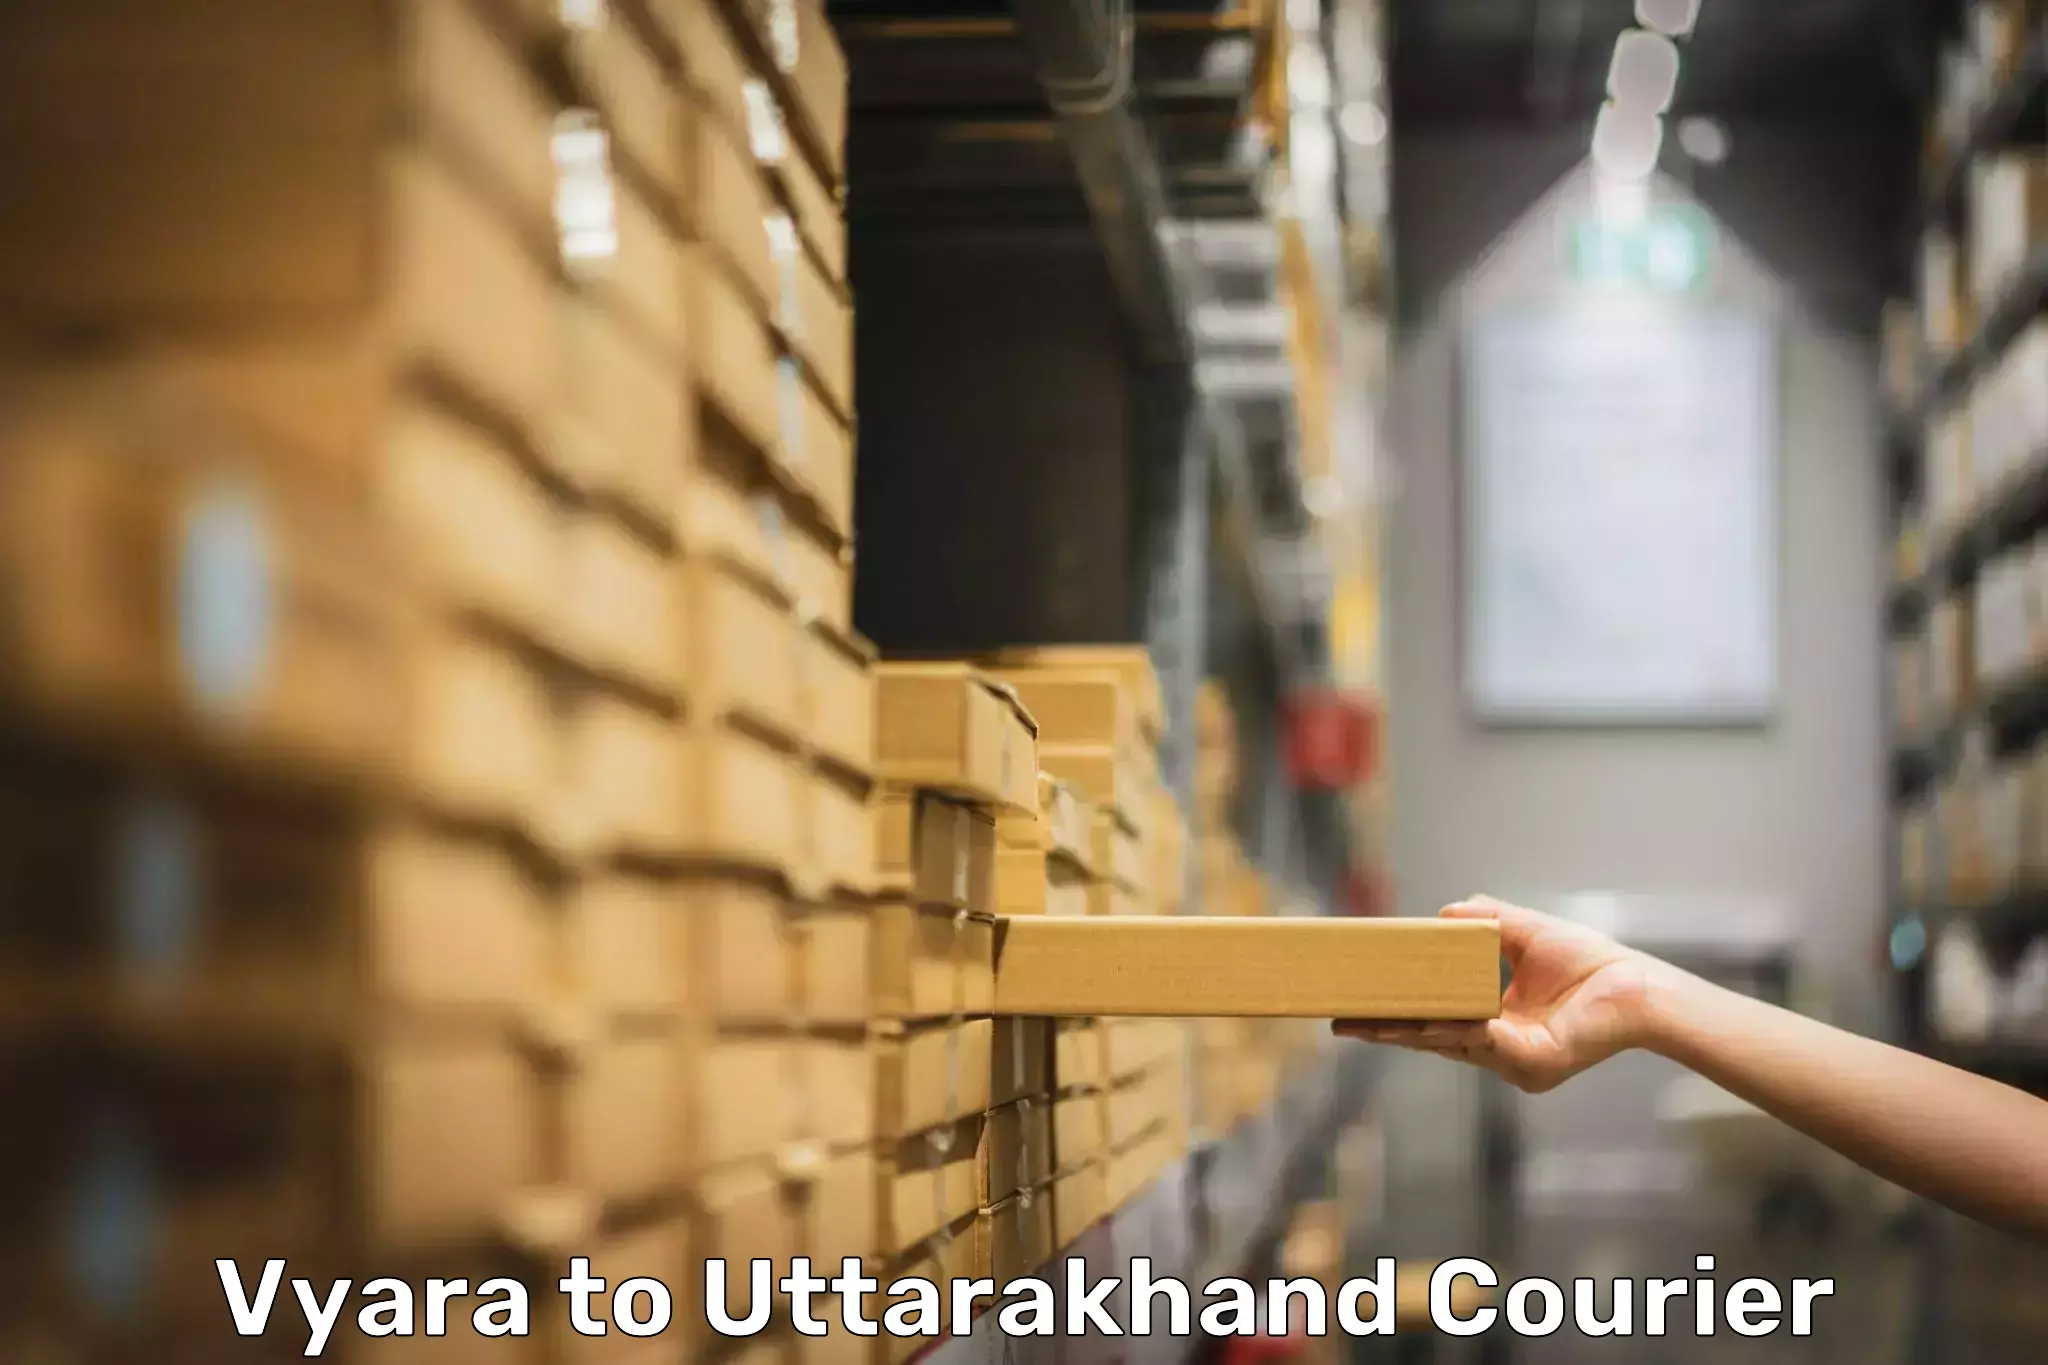 Baggage shipping service Vyara to Uttarakhand